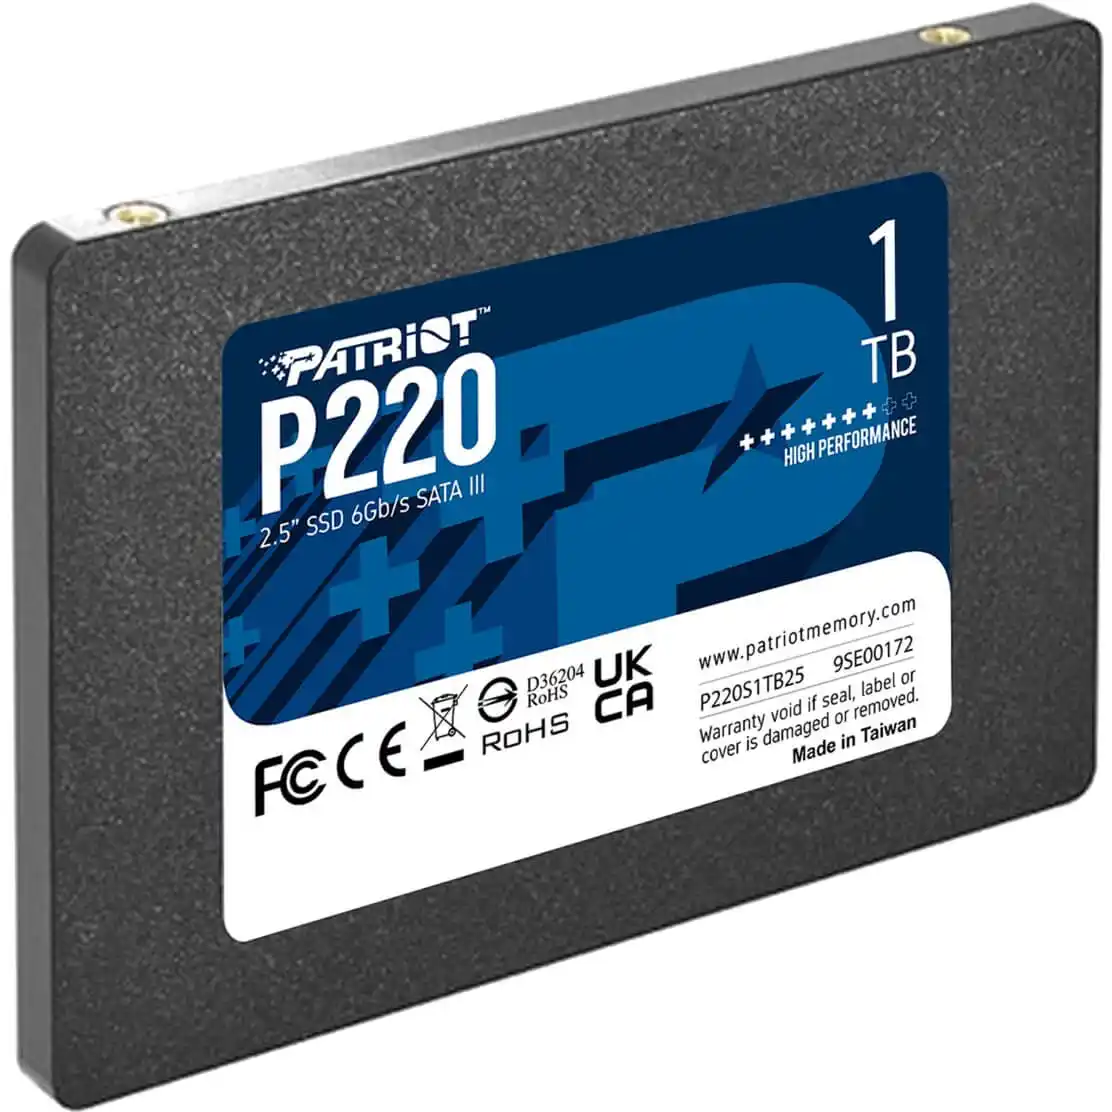 SSD 2.5 SATA3 1TB Patriot P220 550MBs/500MBs P220S1TB25